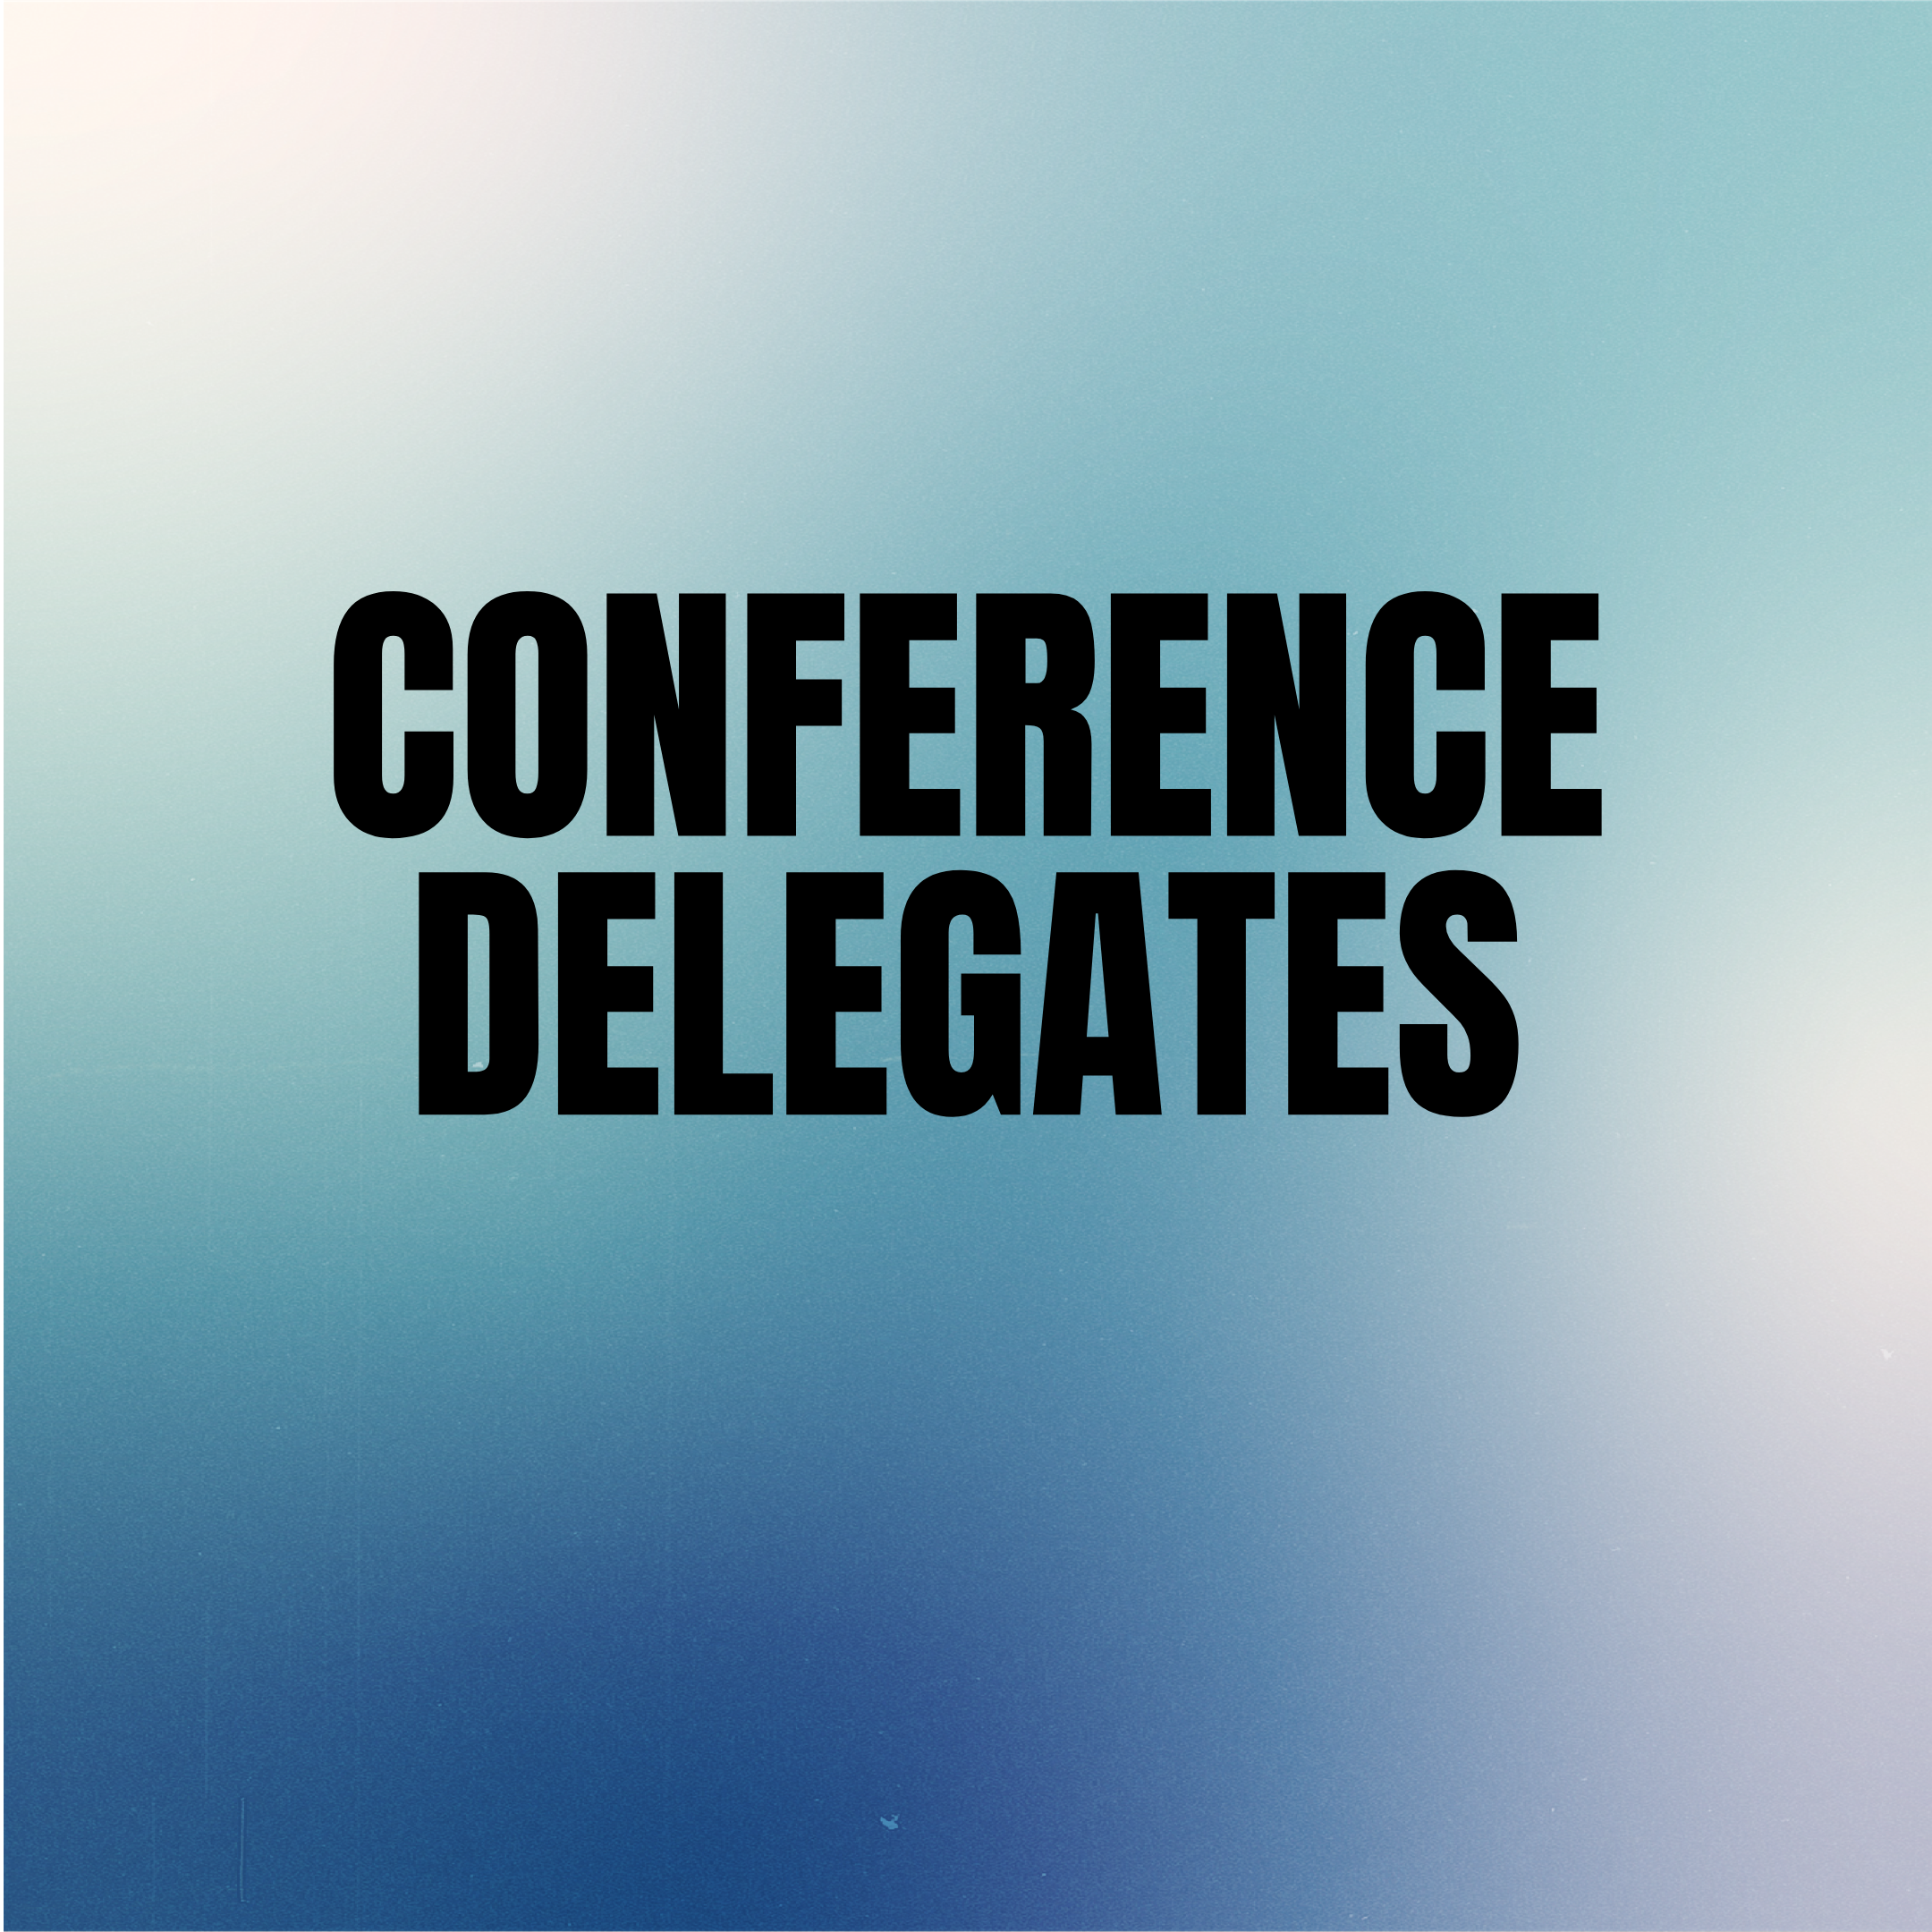 Conference Delegates